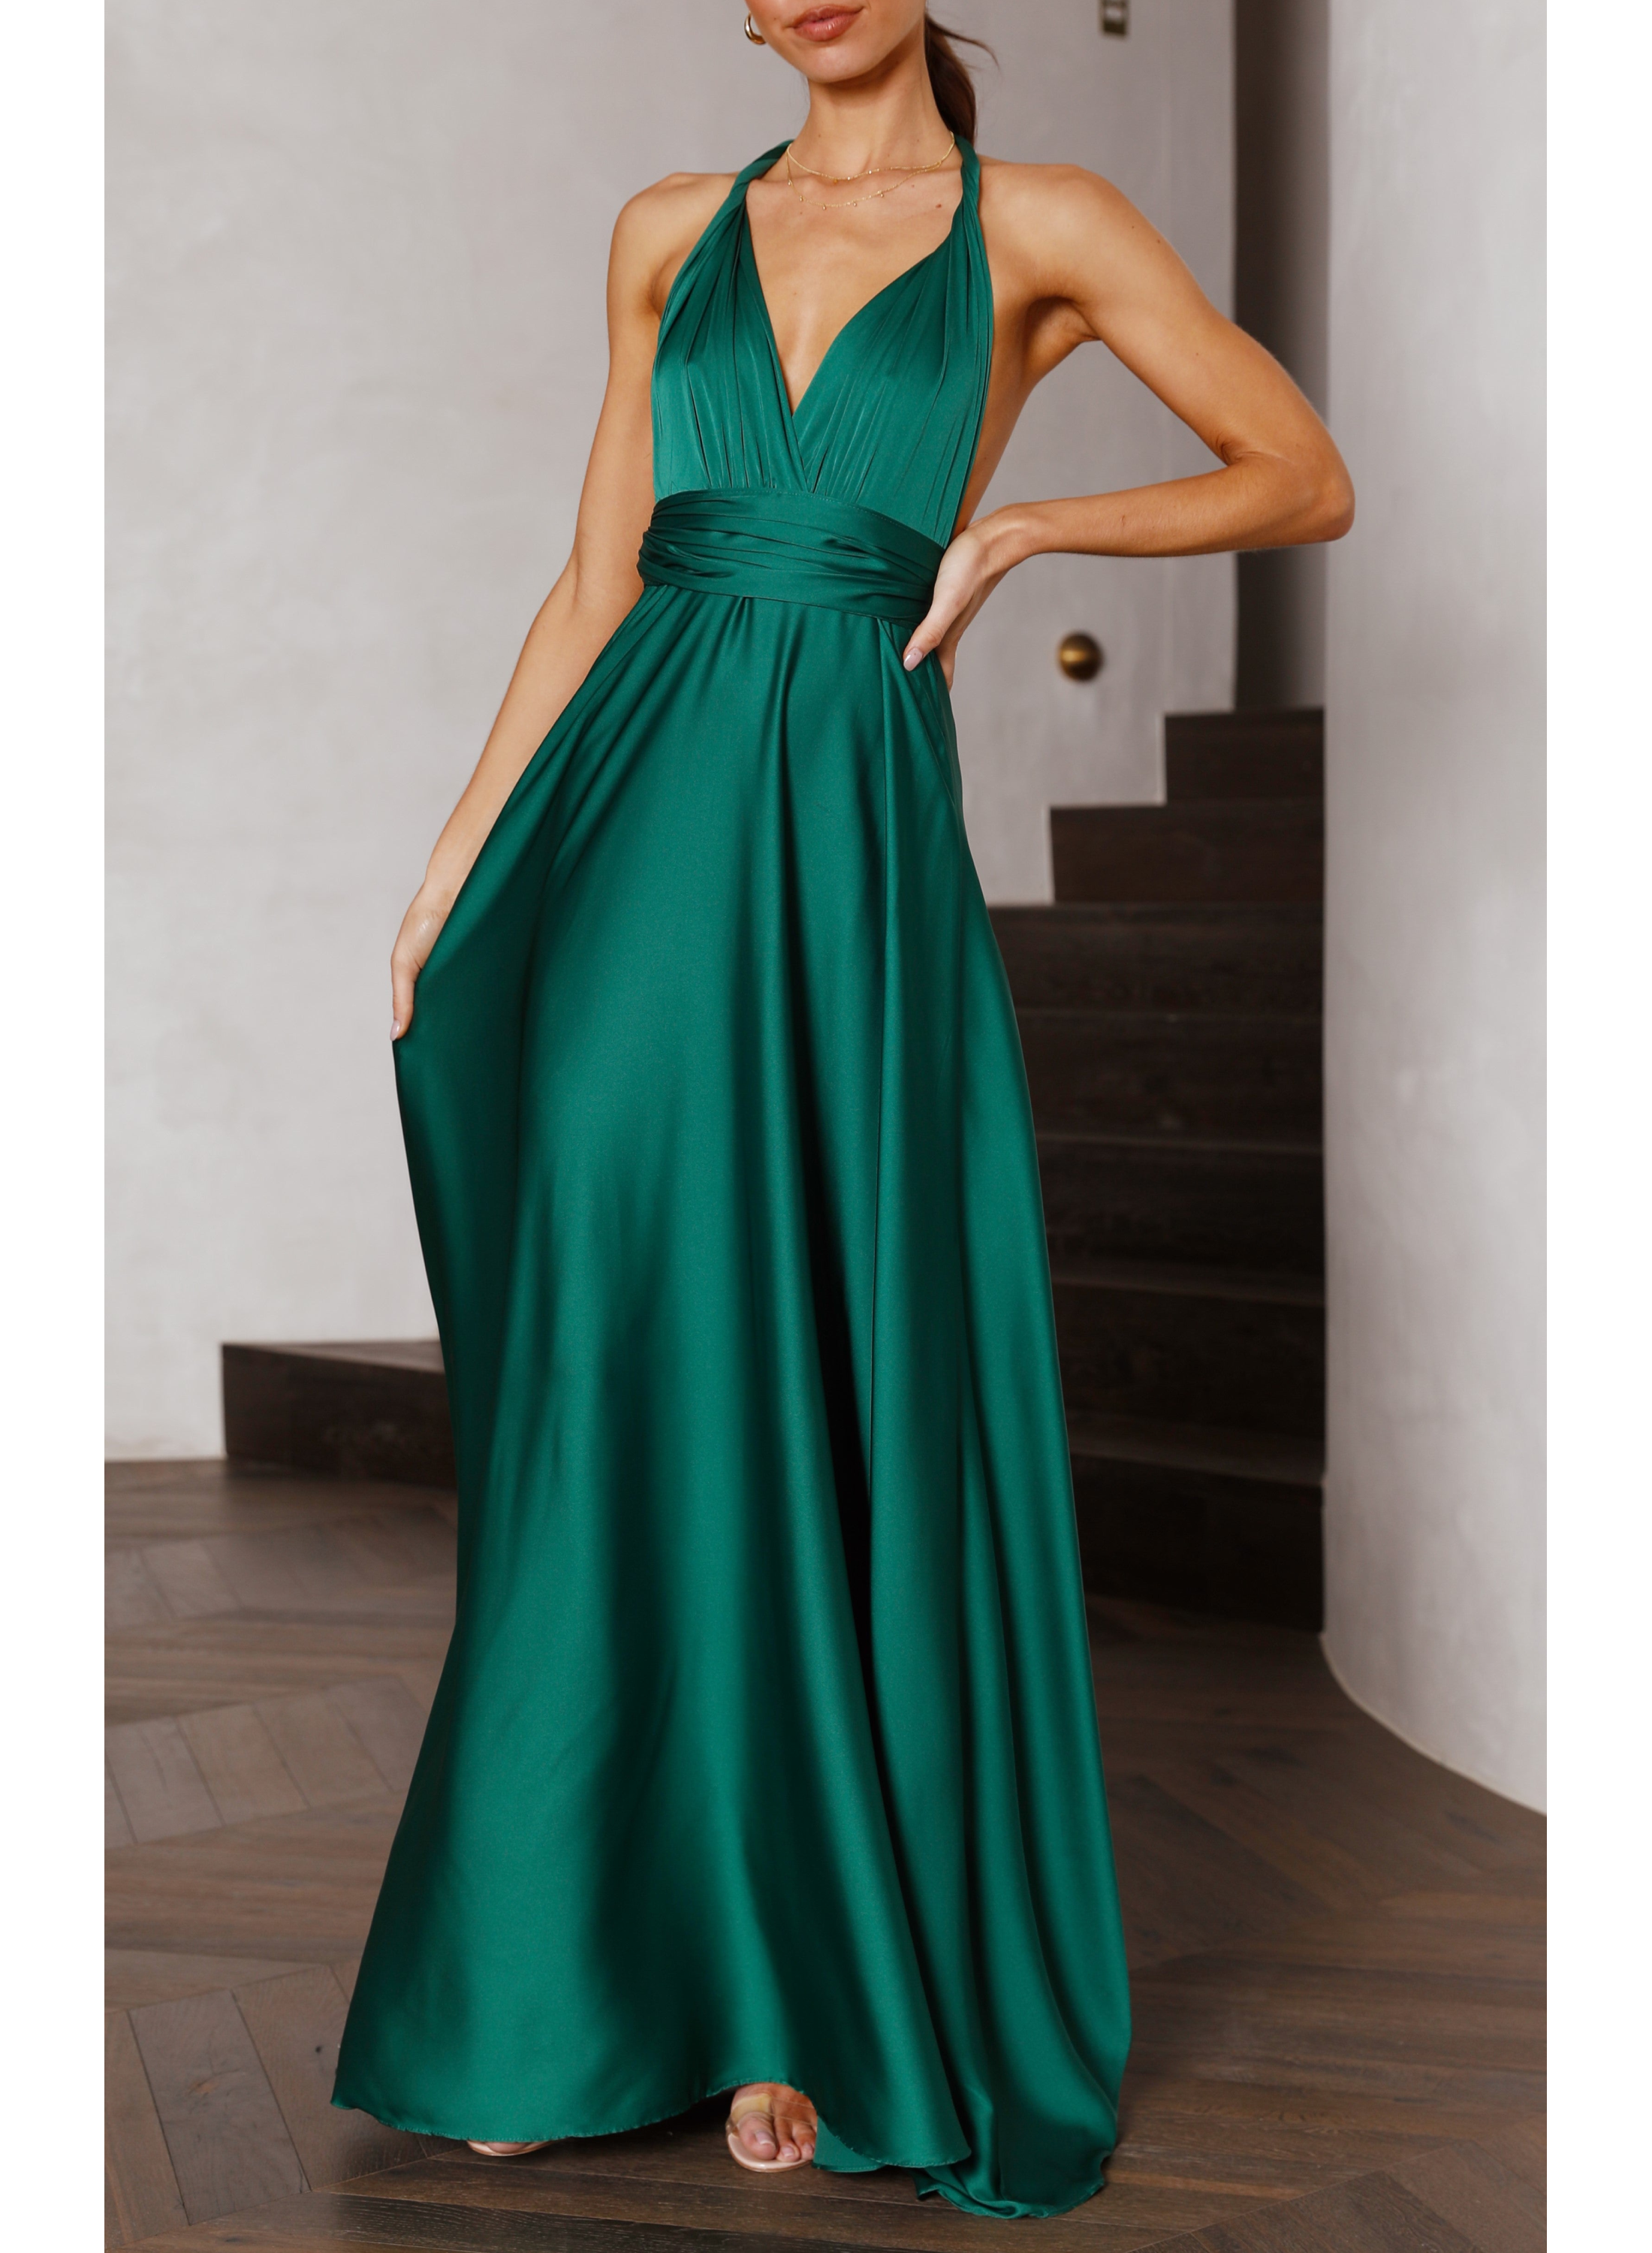 Women's Dresses High Waisted A-line Silhouette Convertible Maxi Dress